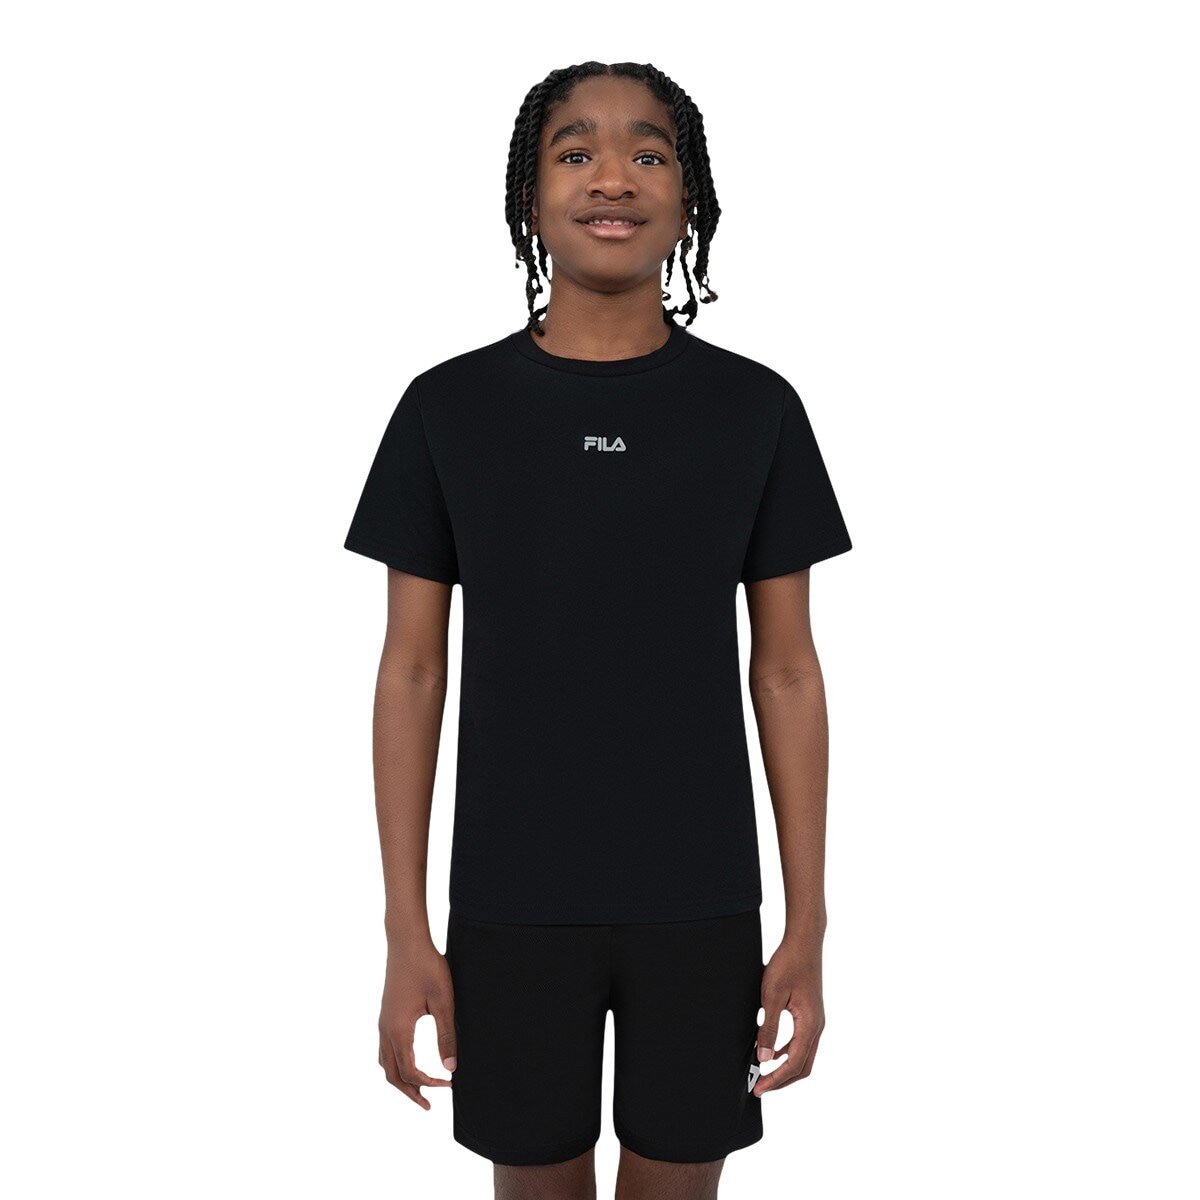 Fila 兒童短袖運動服飾三件組 黑色組